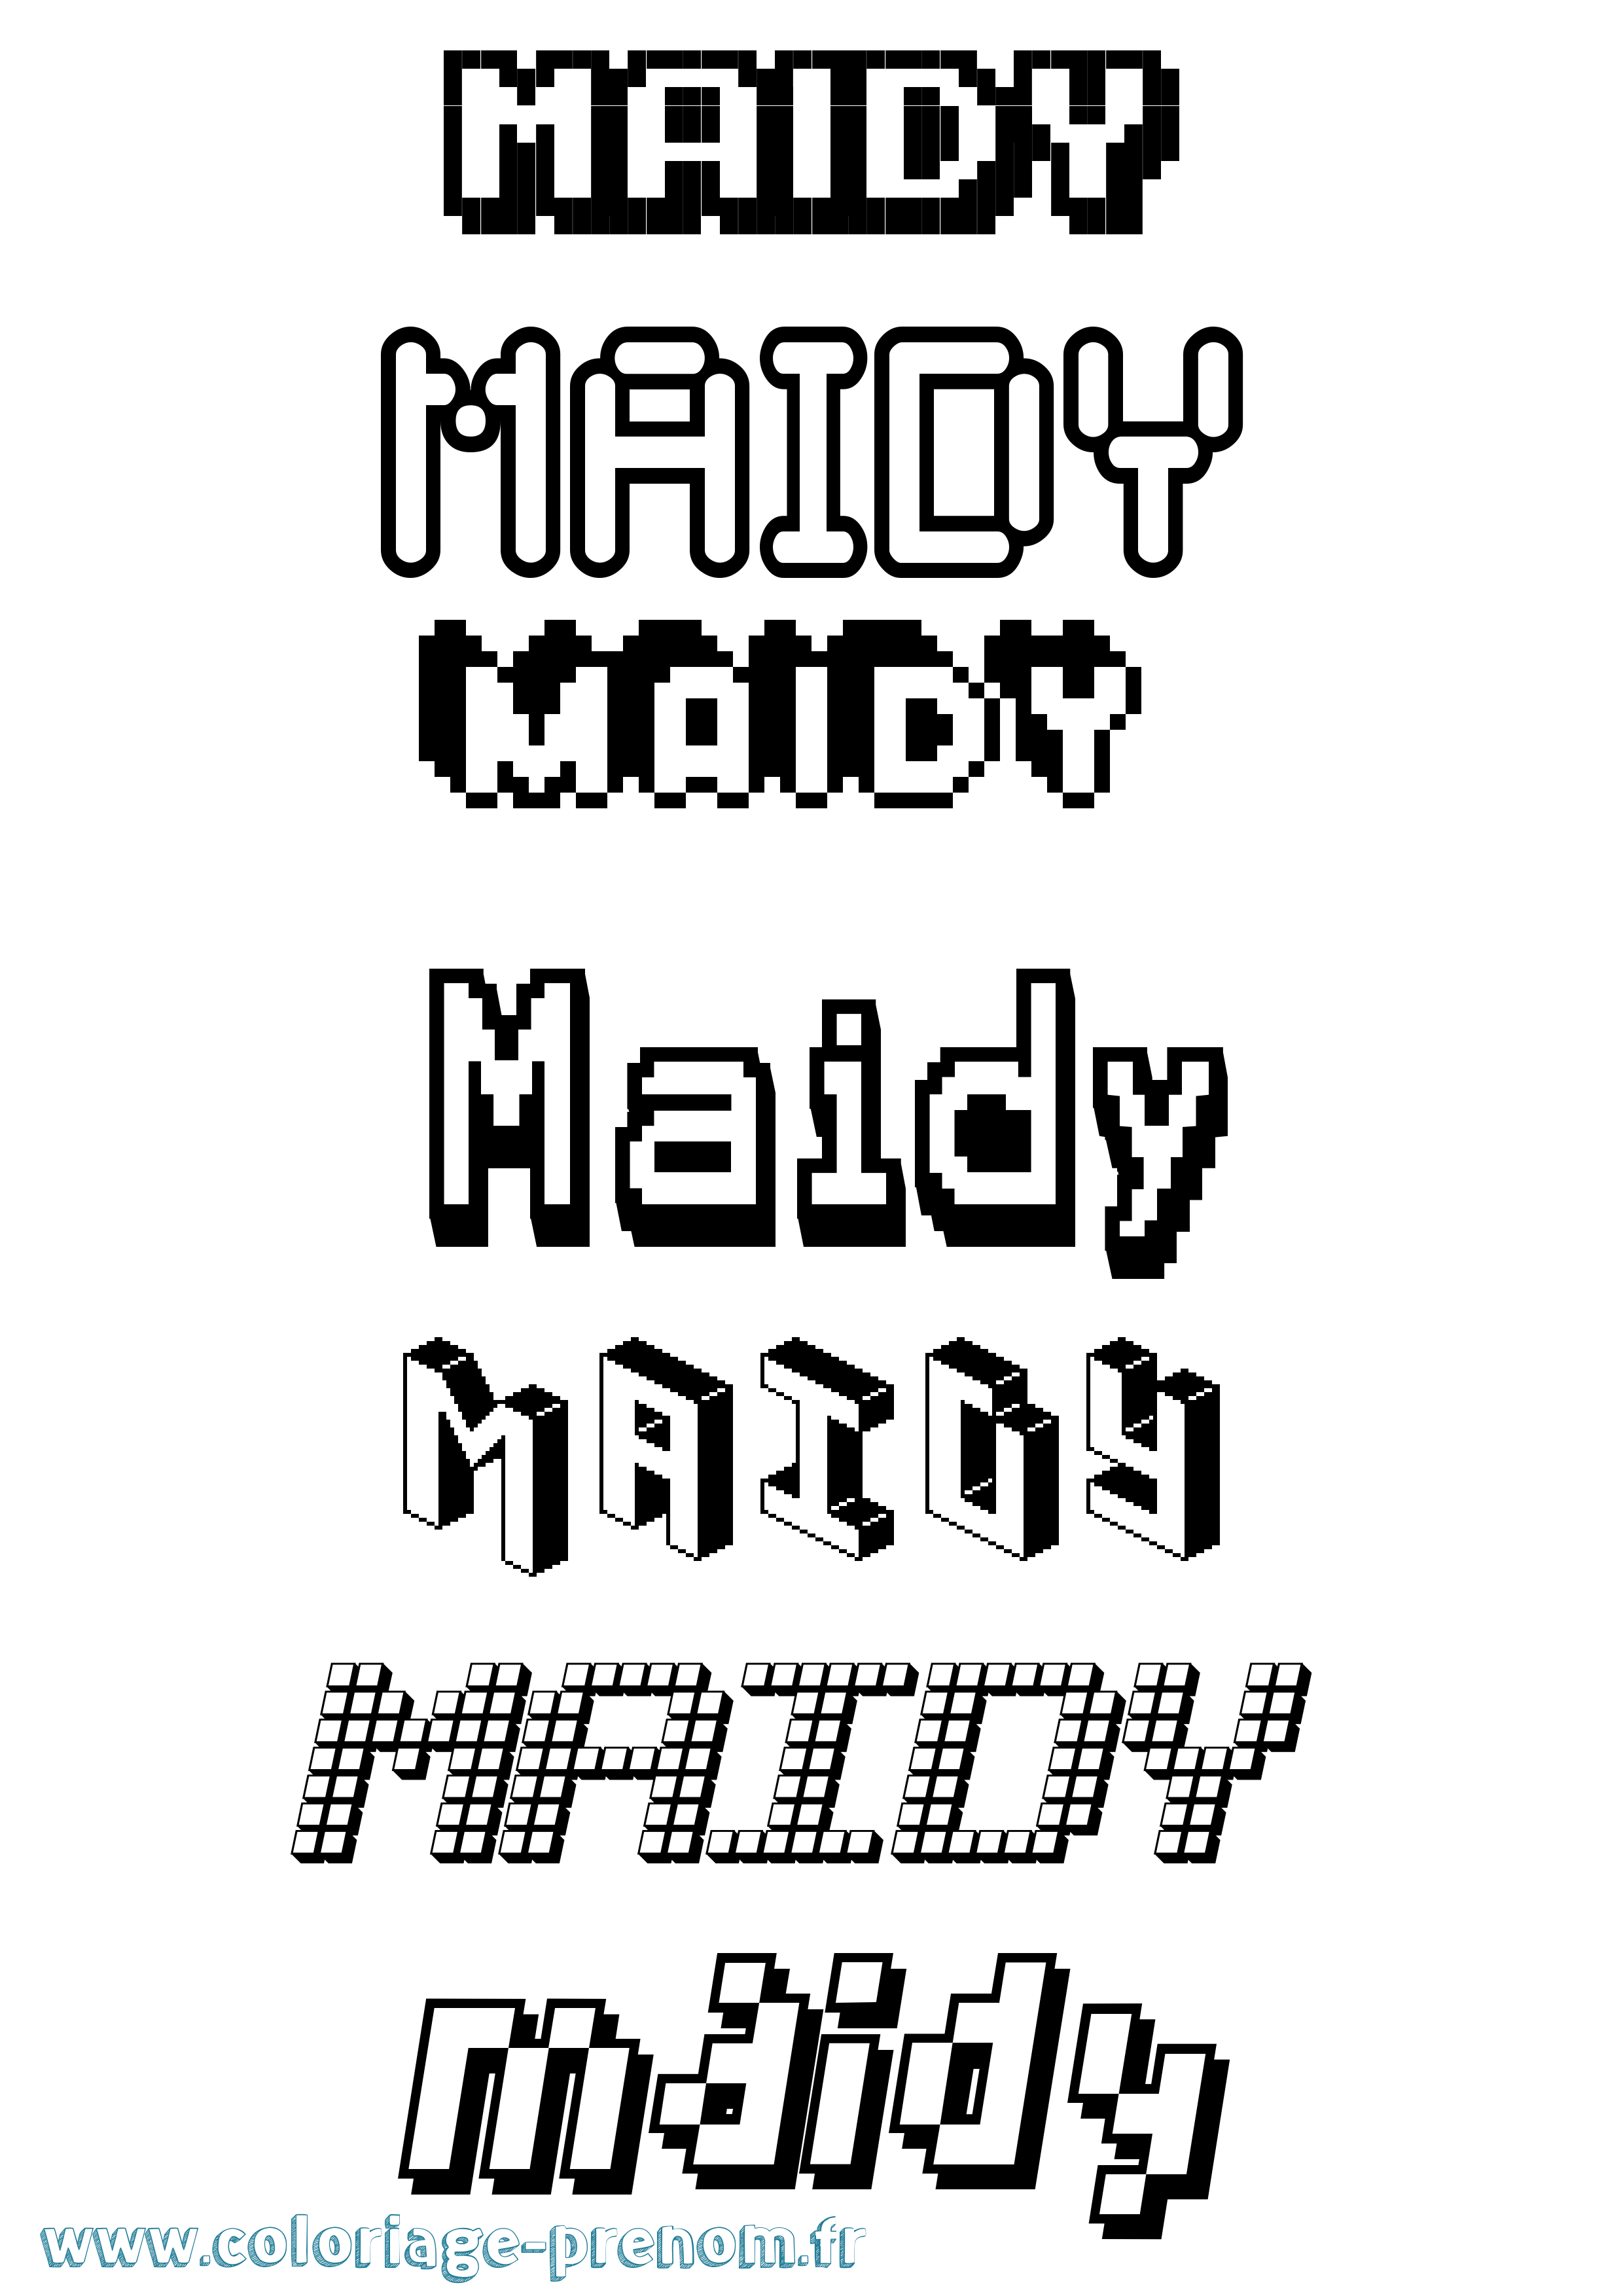 Coloriage prénom Maidy Pixel